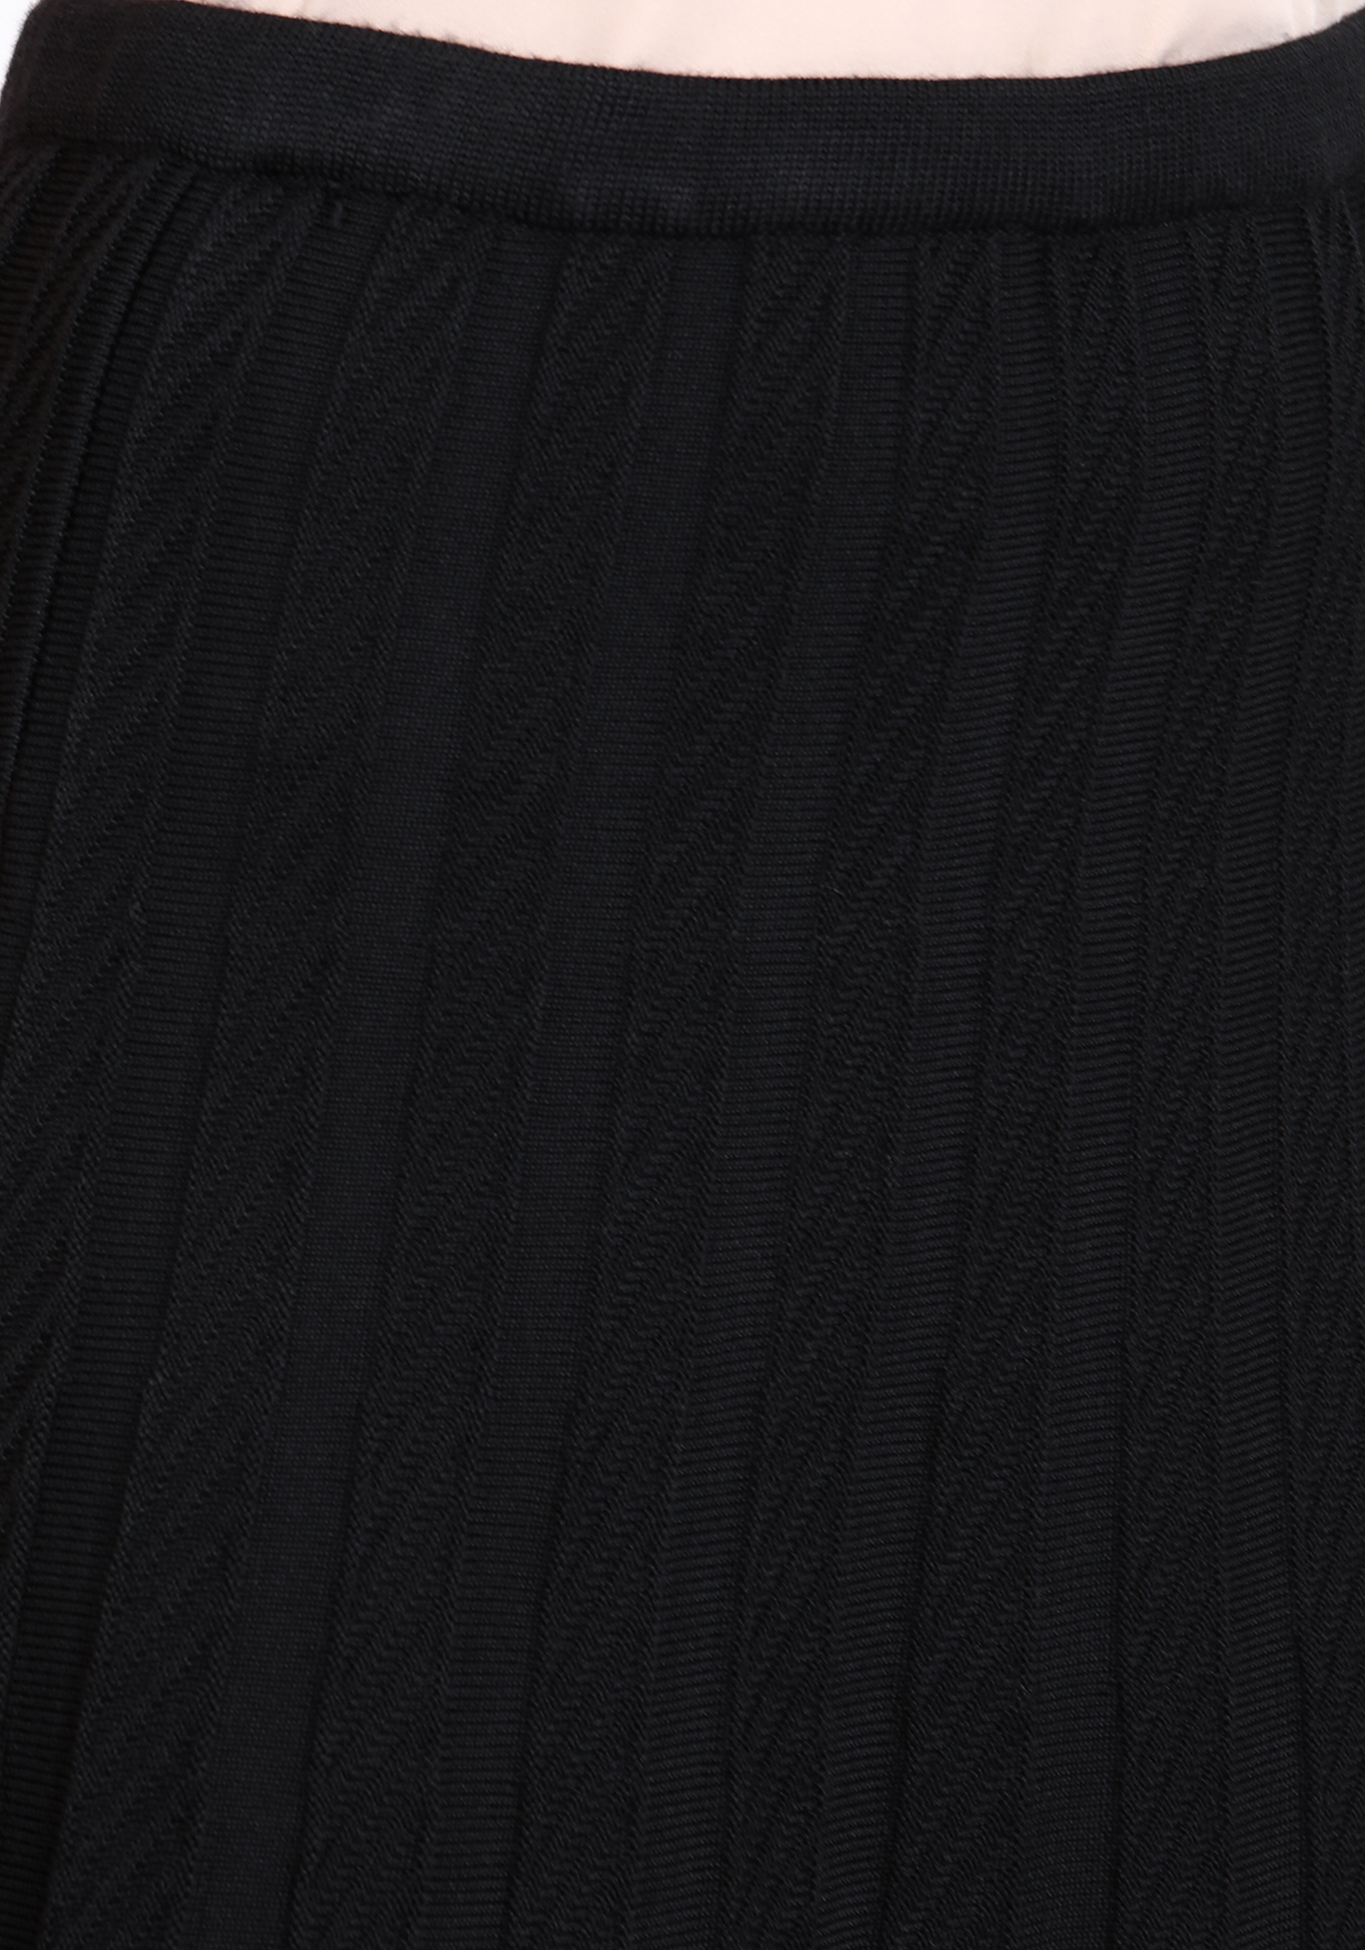 Юбка А-силуэта с вертикальным узором Vivawool, размер 48, цвет кофейный - фото 6